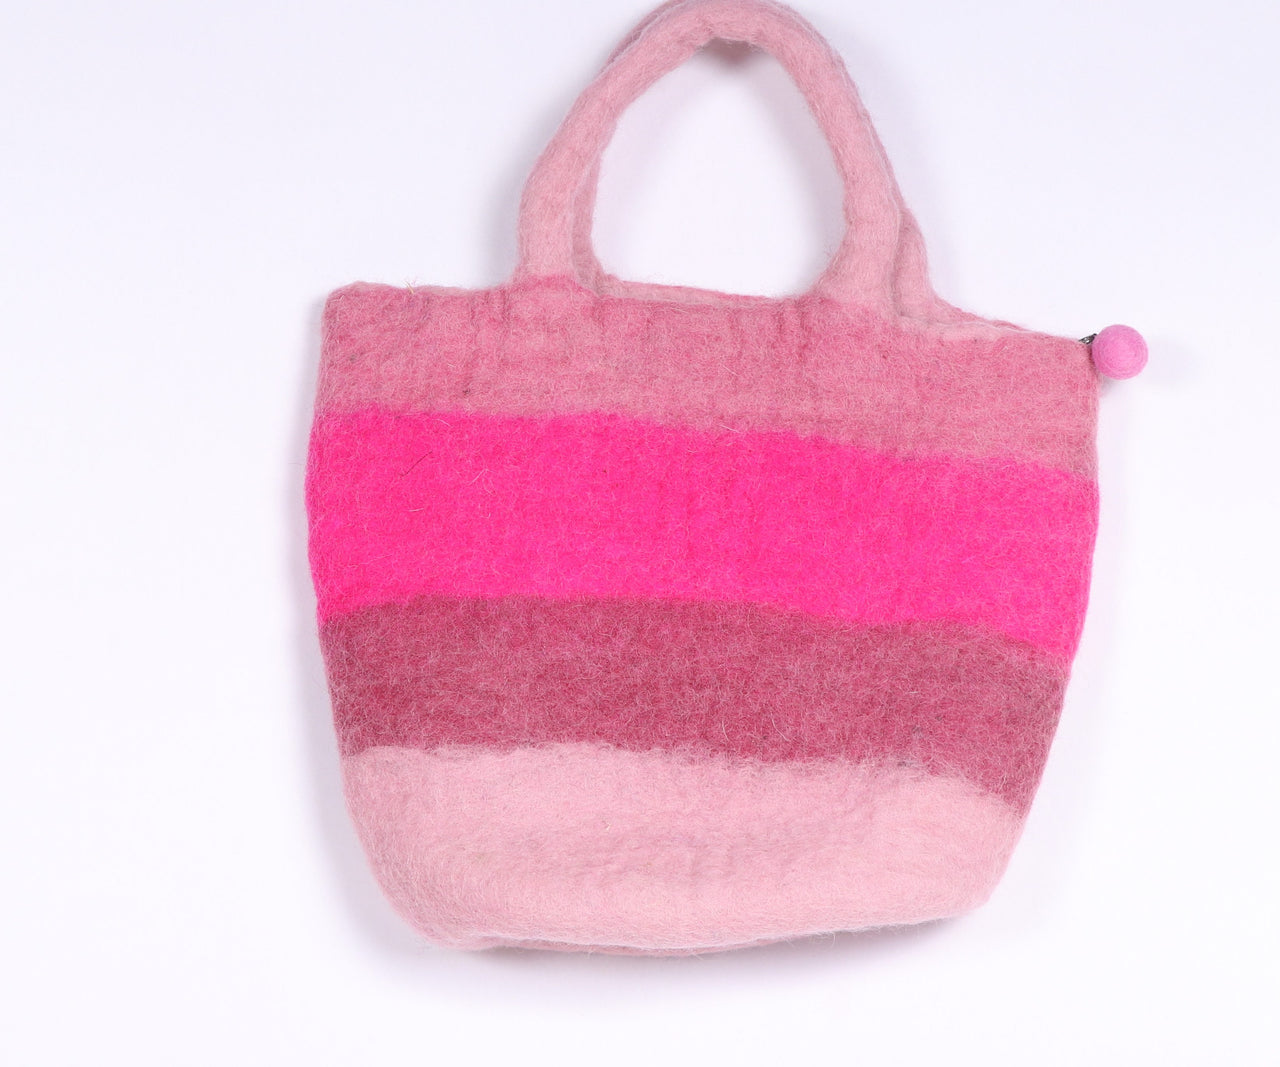 Colourful felt bag